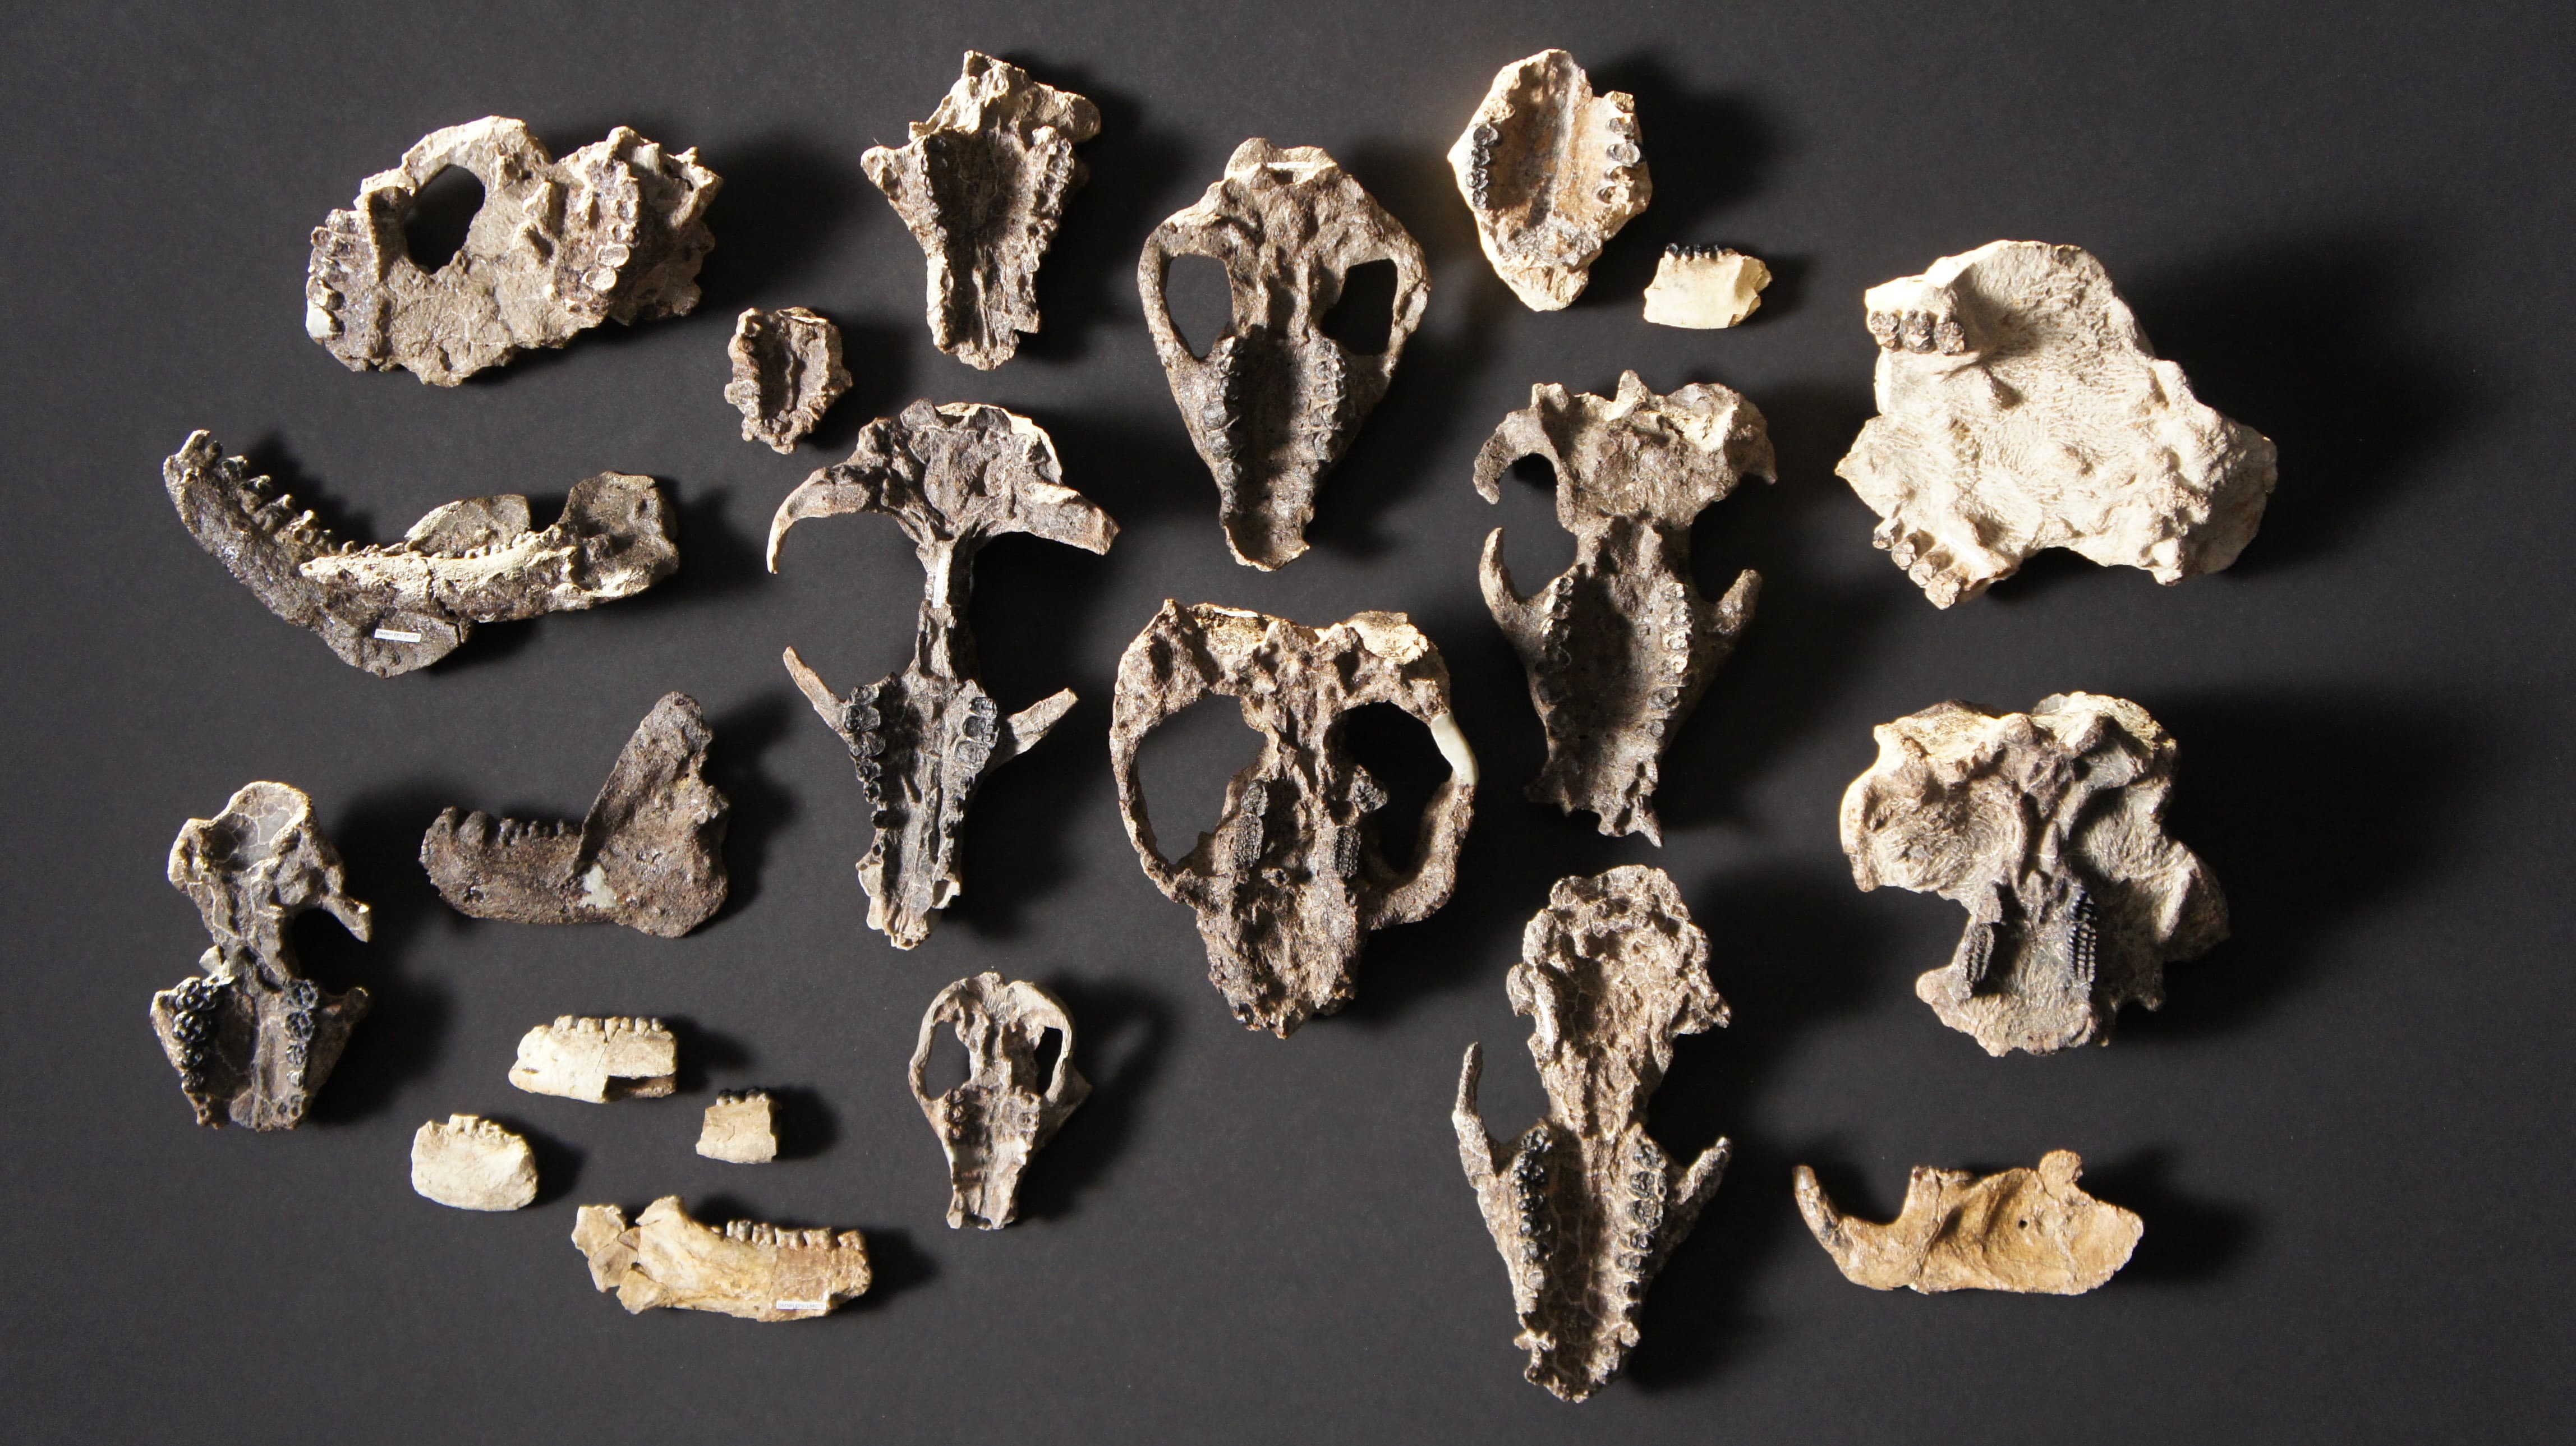 Crânios e mandíbulas de mamíferos descobertos no sítio arqueológico de Corral Bluffs, no Colorado.